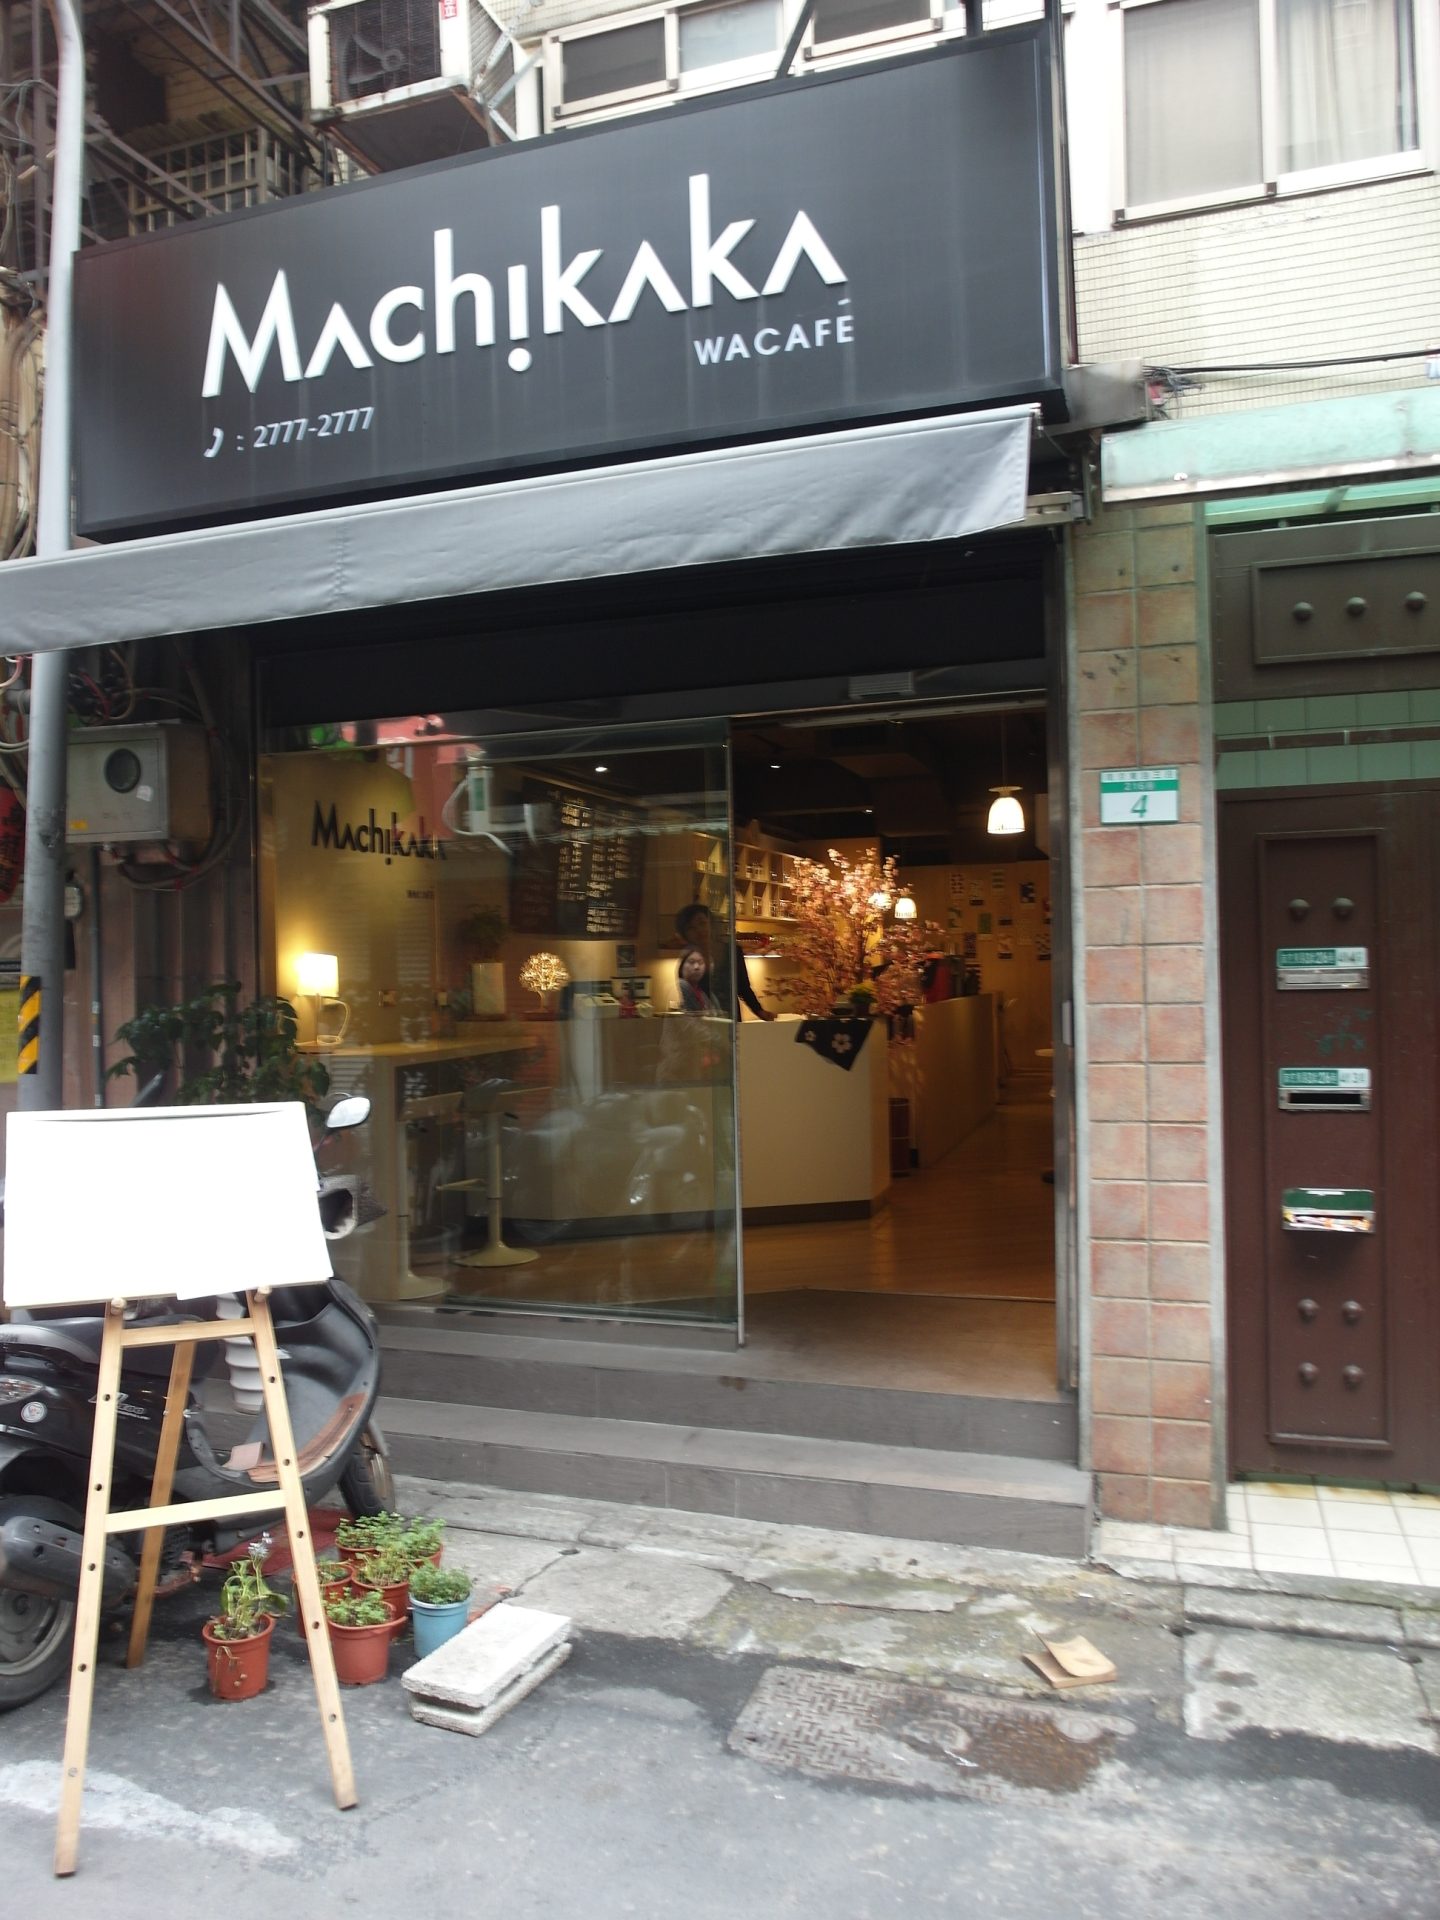 Machikaka